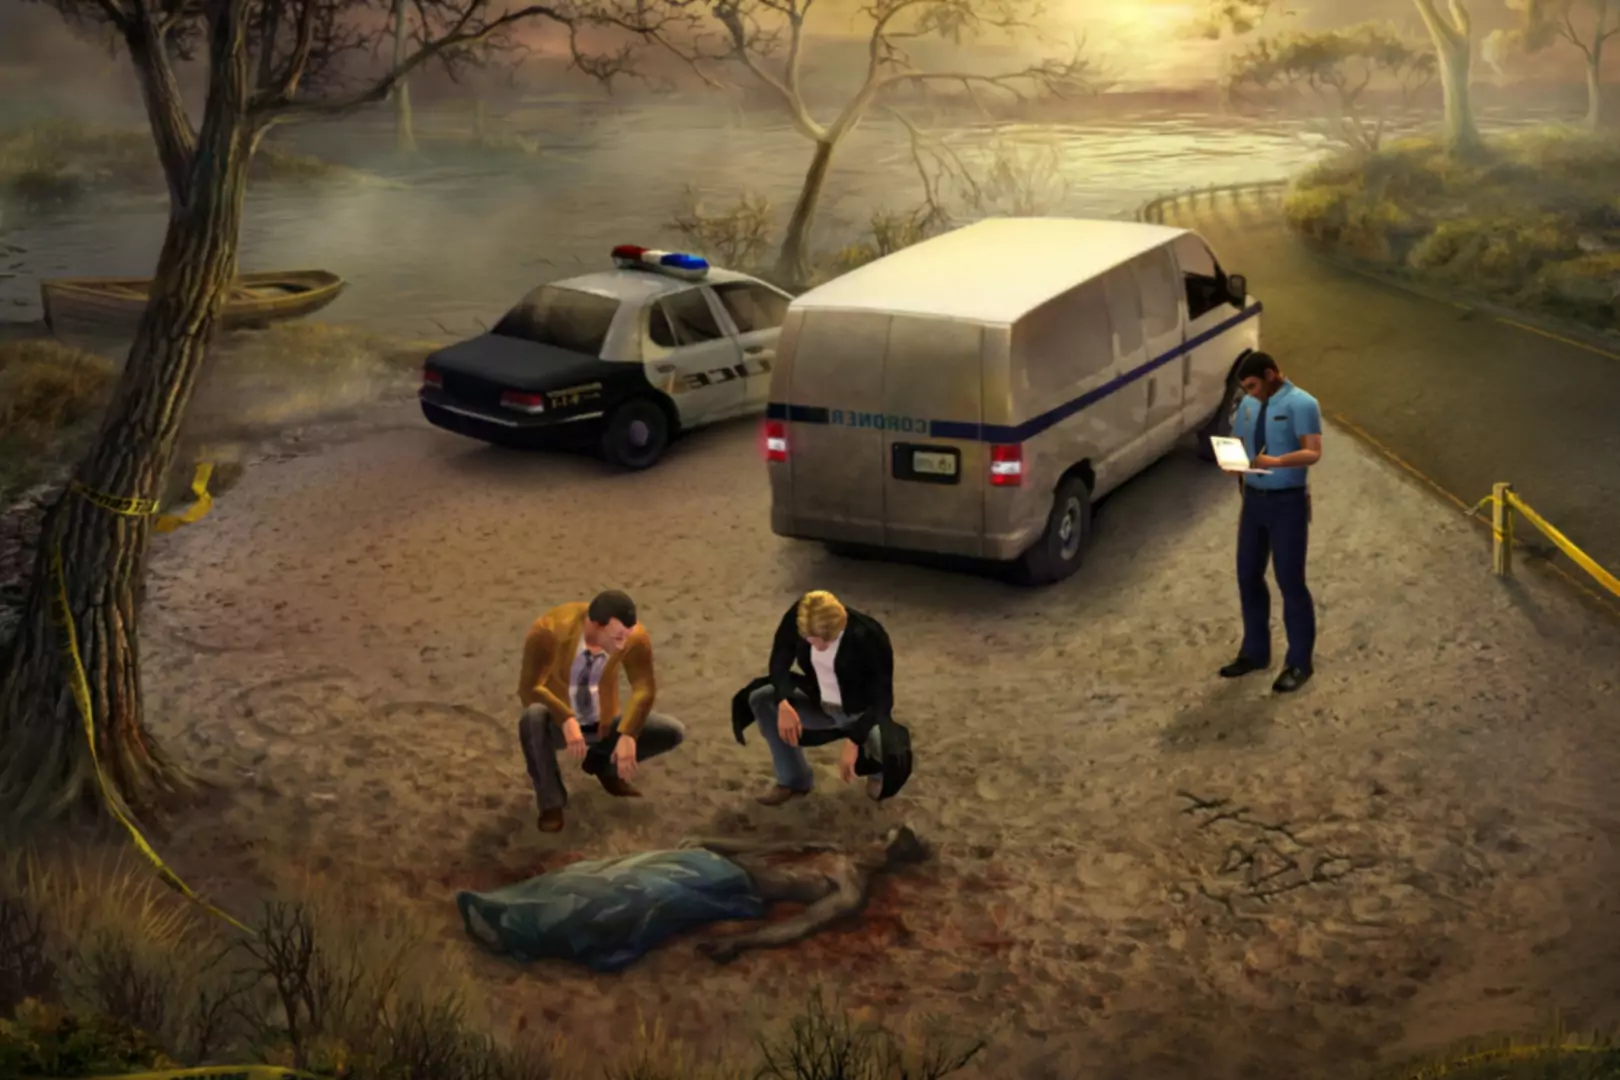 Capture d'écran du jeu Gabriel Knight Sins of the Fathers 20th Anniversary Edition montrant les personnages et la police observant ...